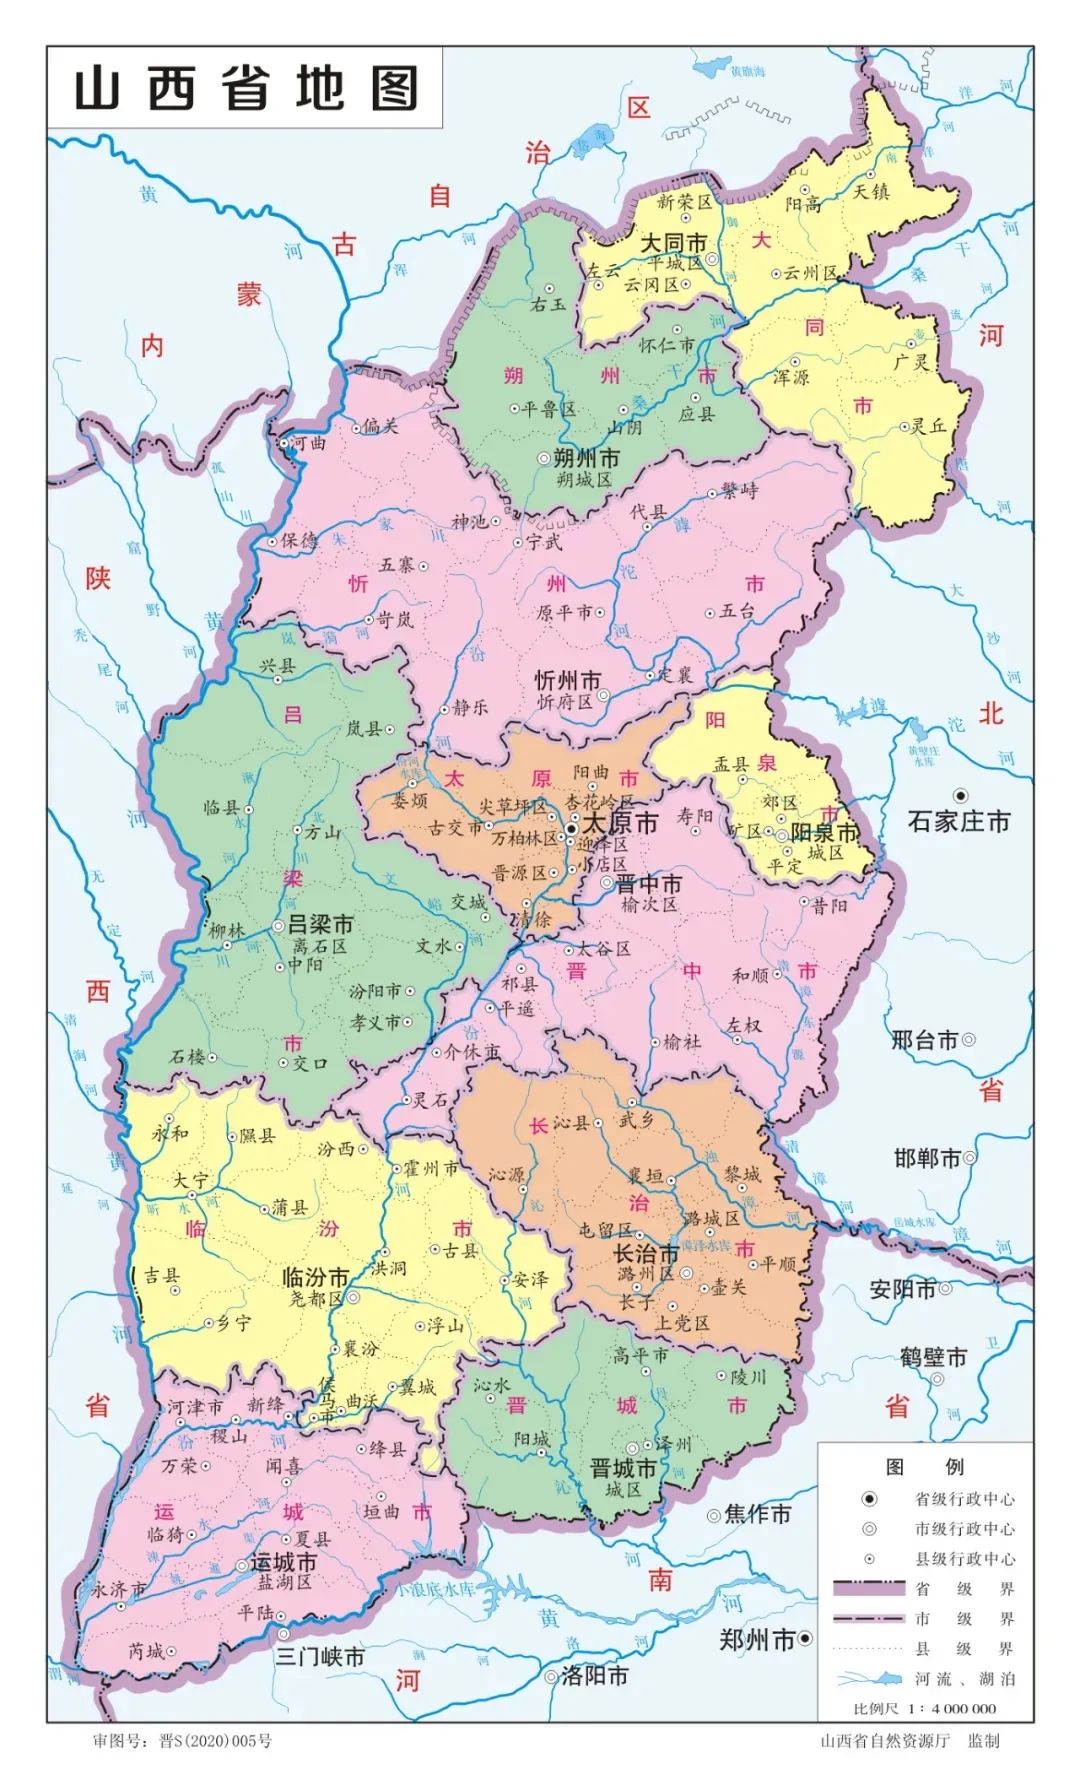 2020版山西省标准地图发布新增示意图和水系图